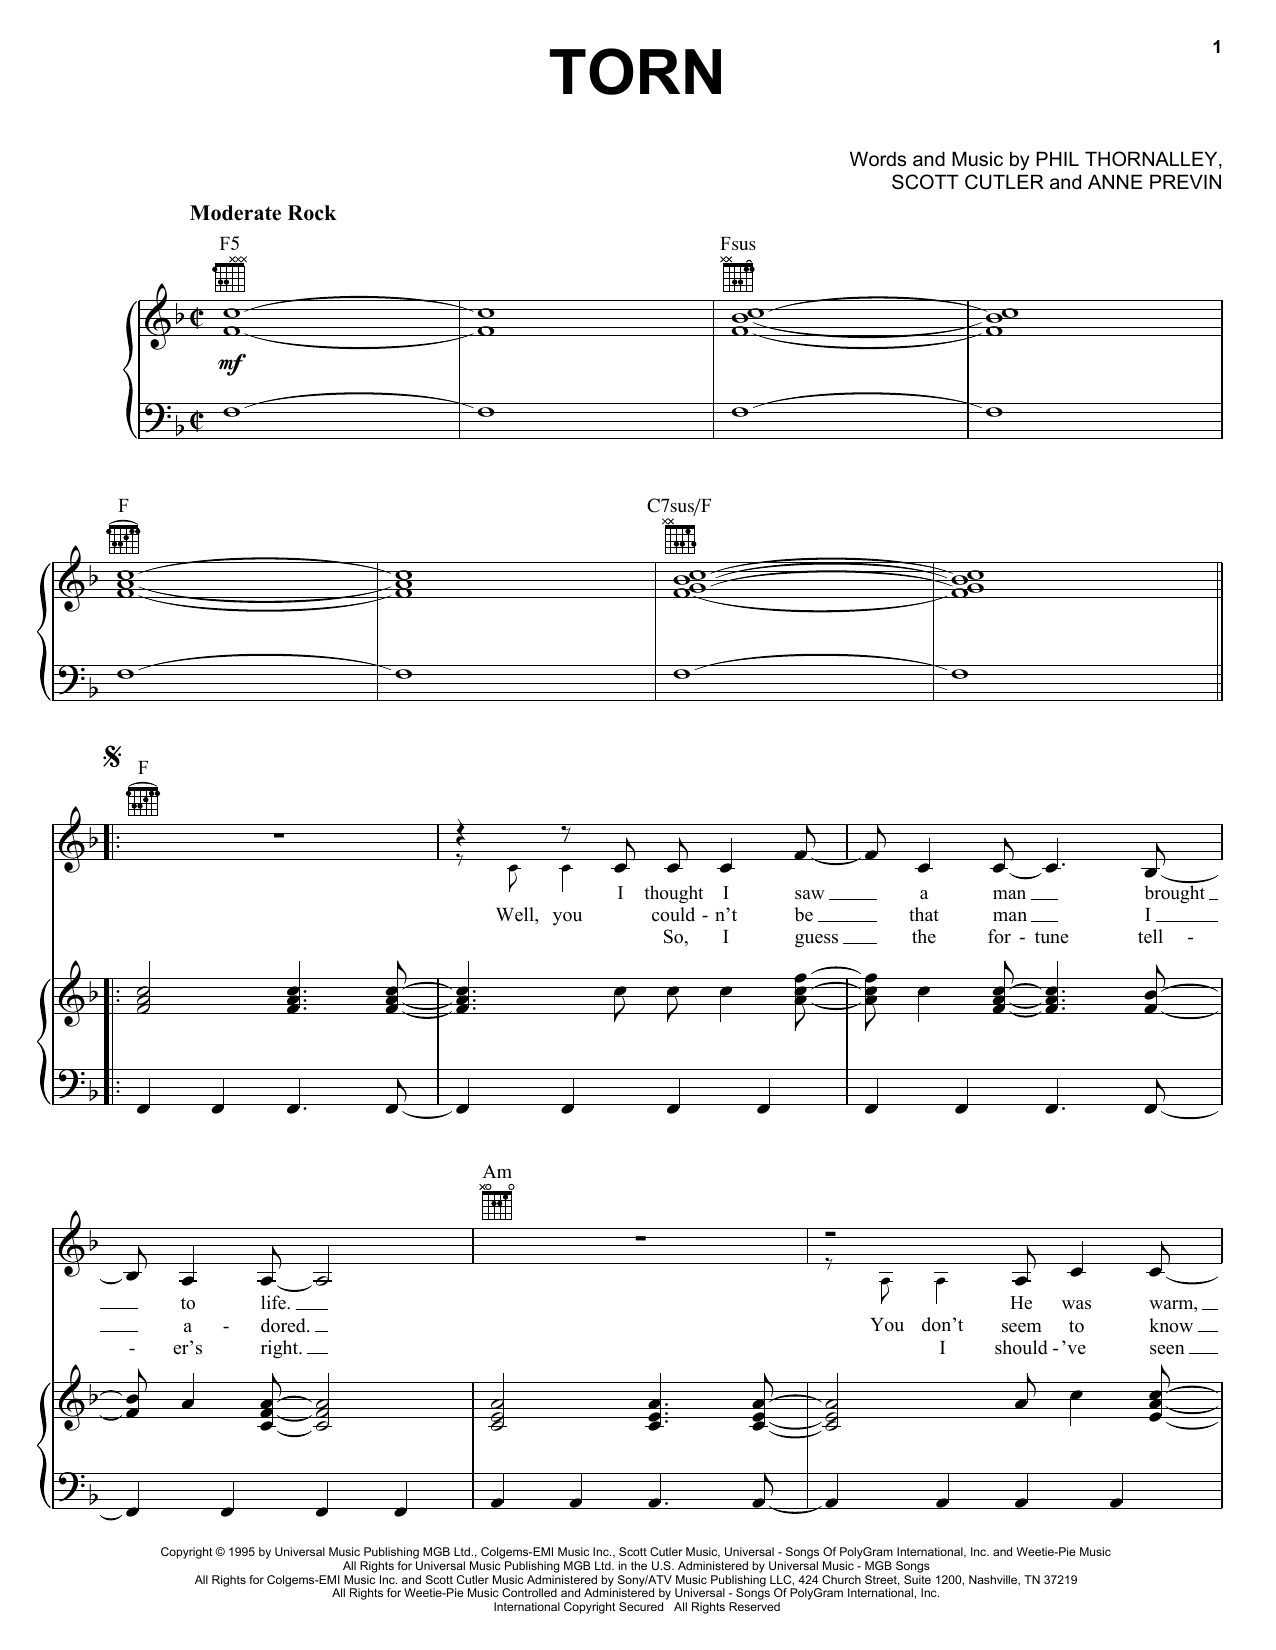 Natalie Imbruglia Torn Sheet Music Notes & Chords for Ukulele - Download or Print PDF